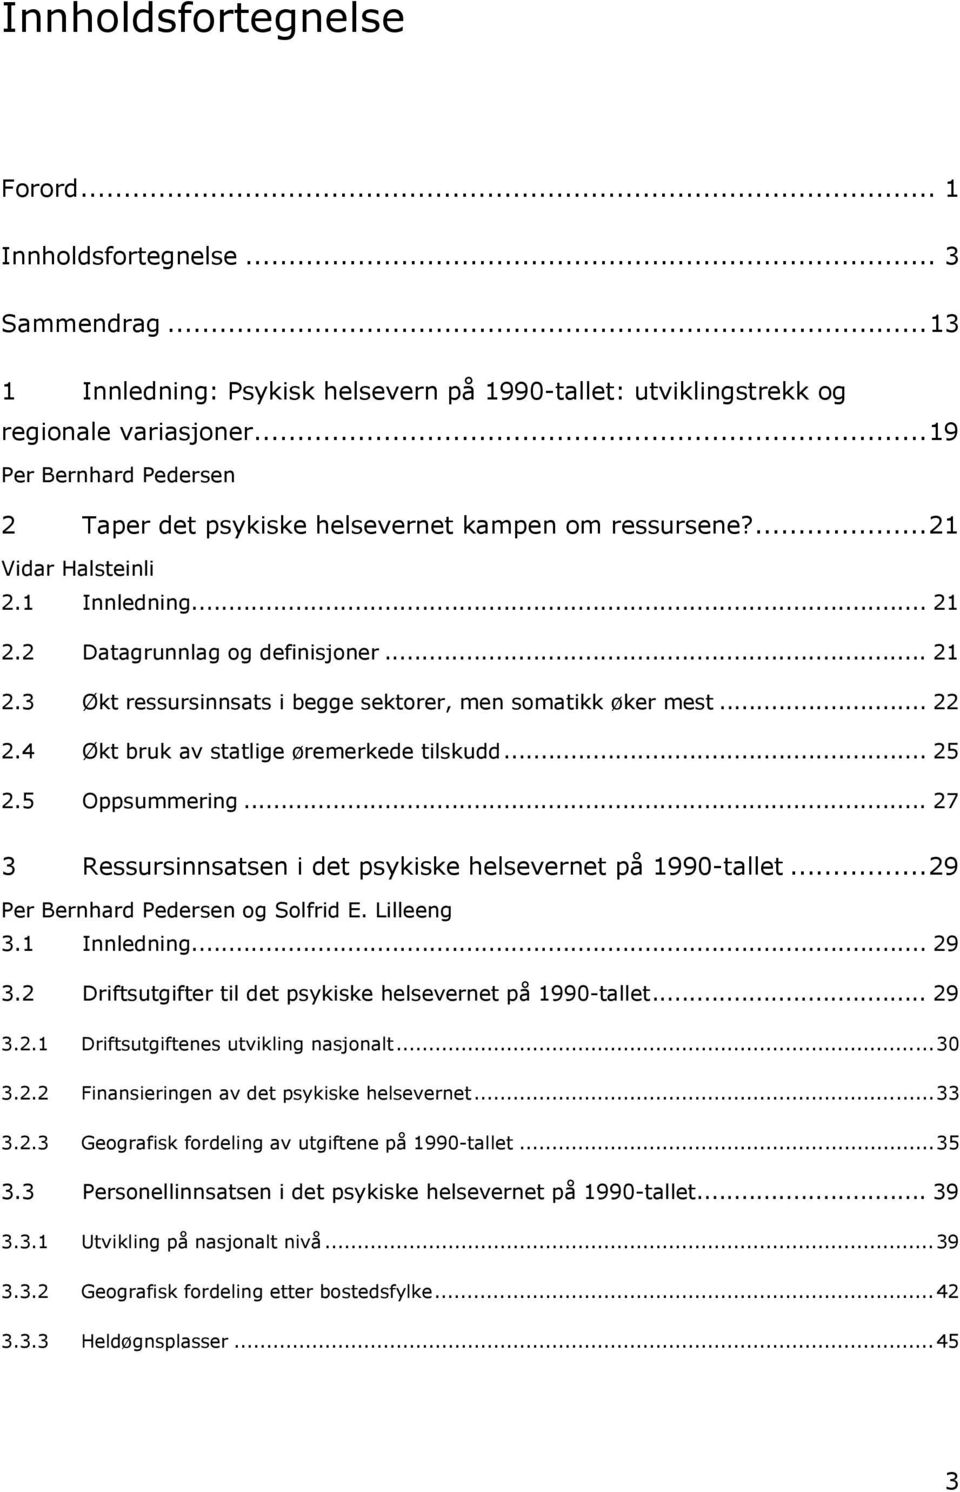 .. 22 2.4 Økt bruk av statlige øremerkede tilskudd... 25 2.5 Oppsummering... 27 3 Ressursinnsatsen i det psykiske helsevernet på 1990-tallet...29 Per Bernhard Pedersen og Solfrid E. Lilleeng 3.